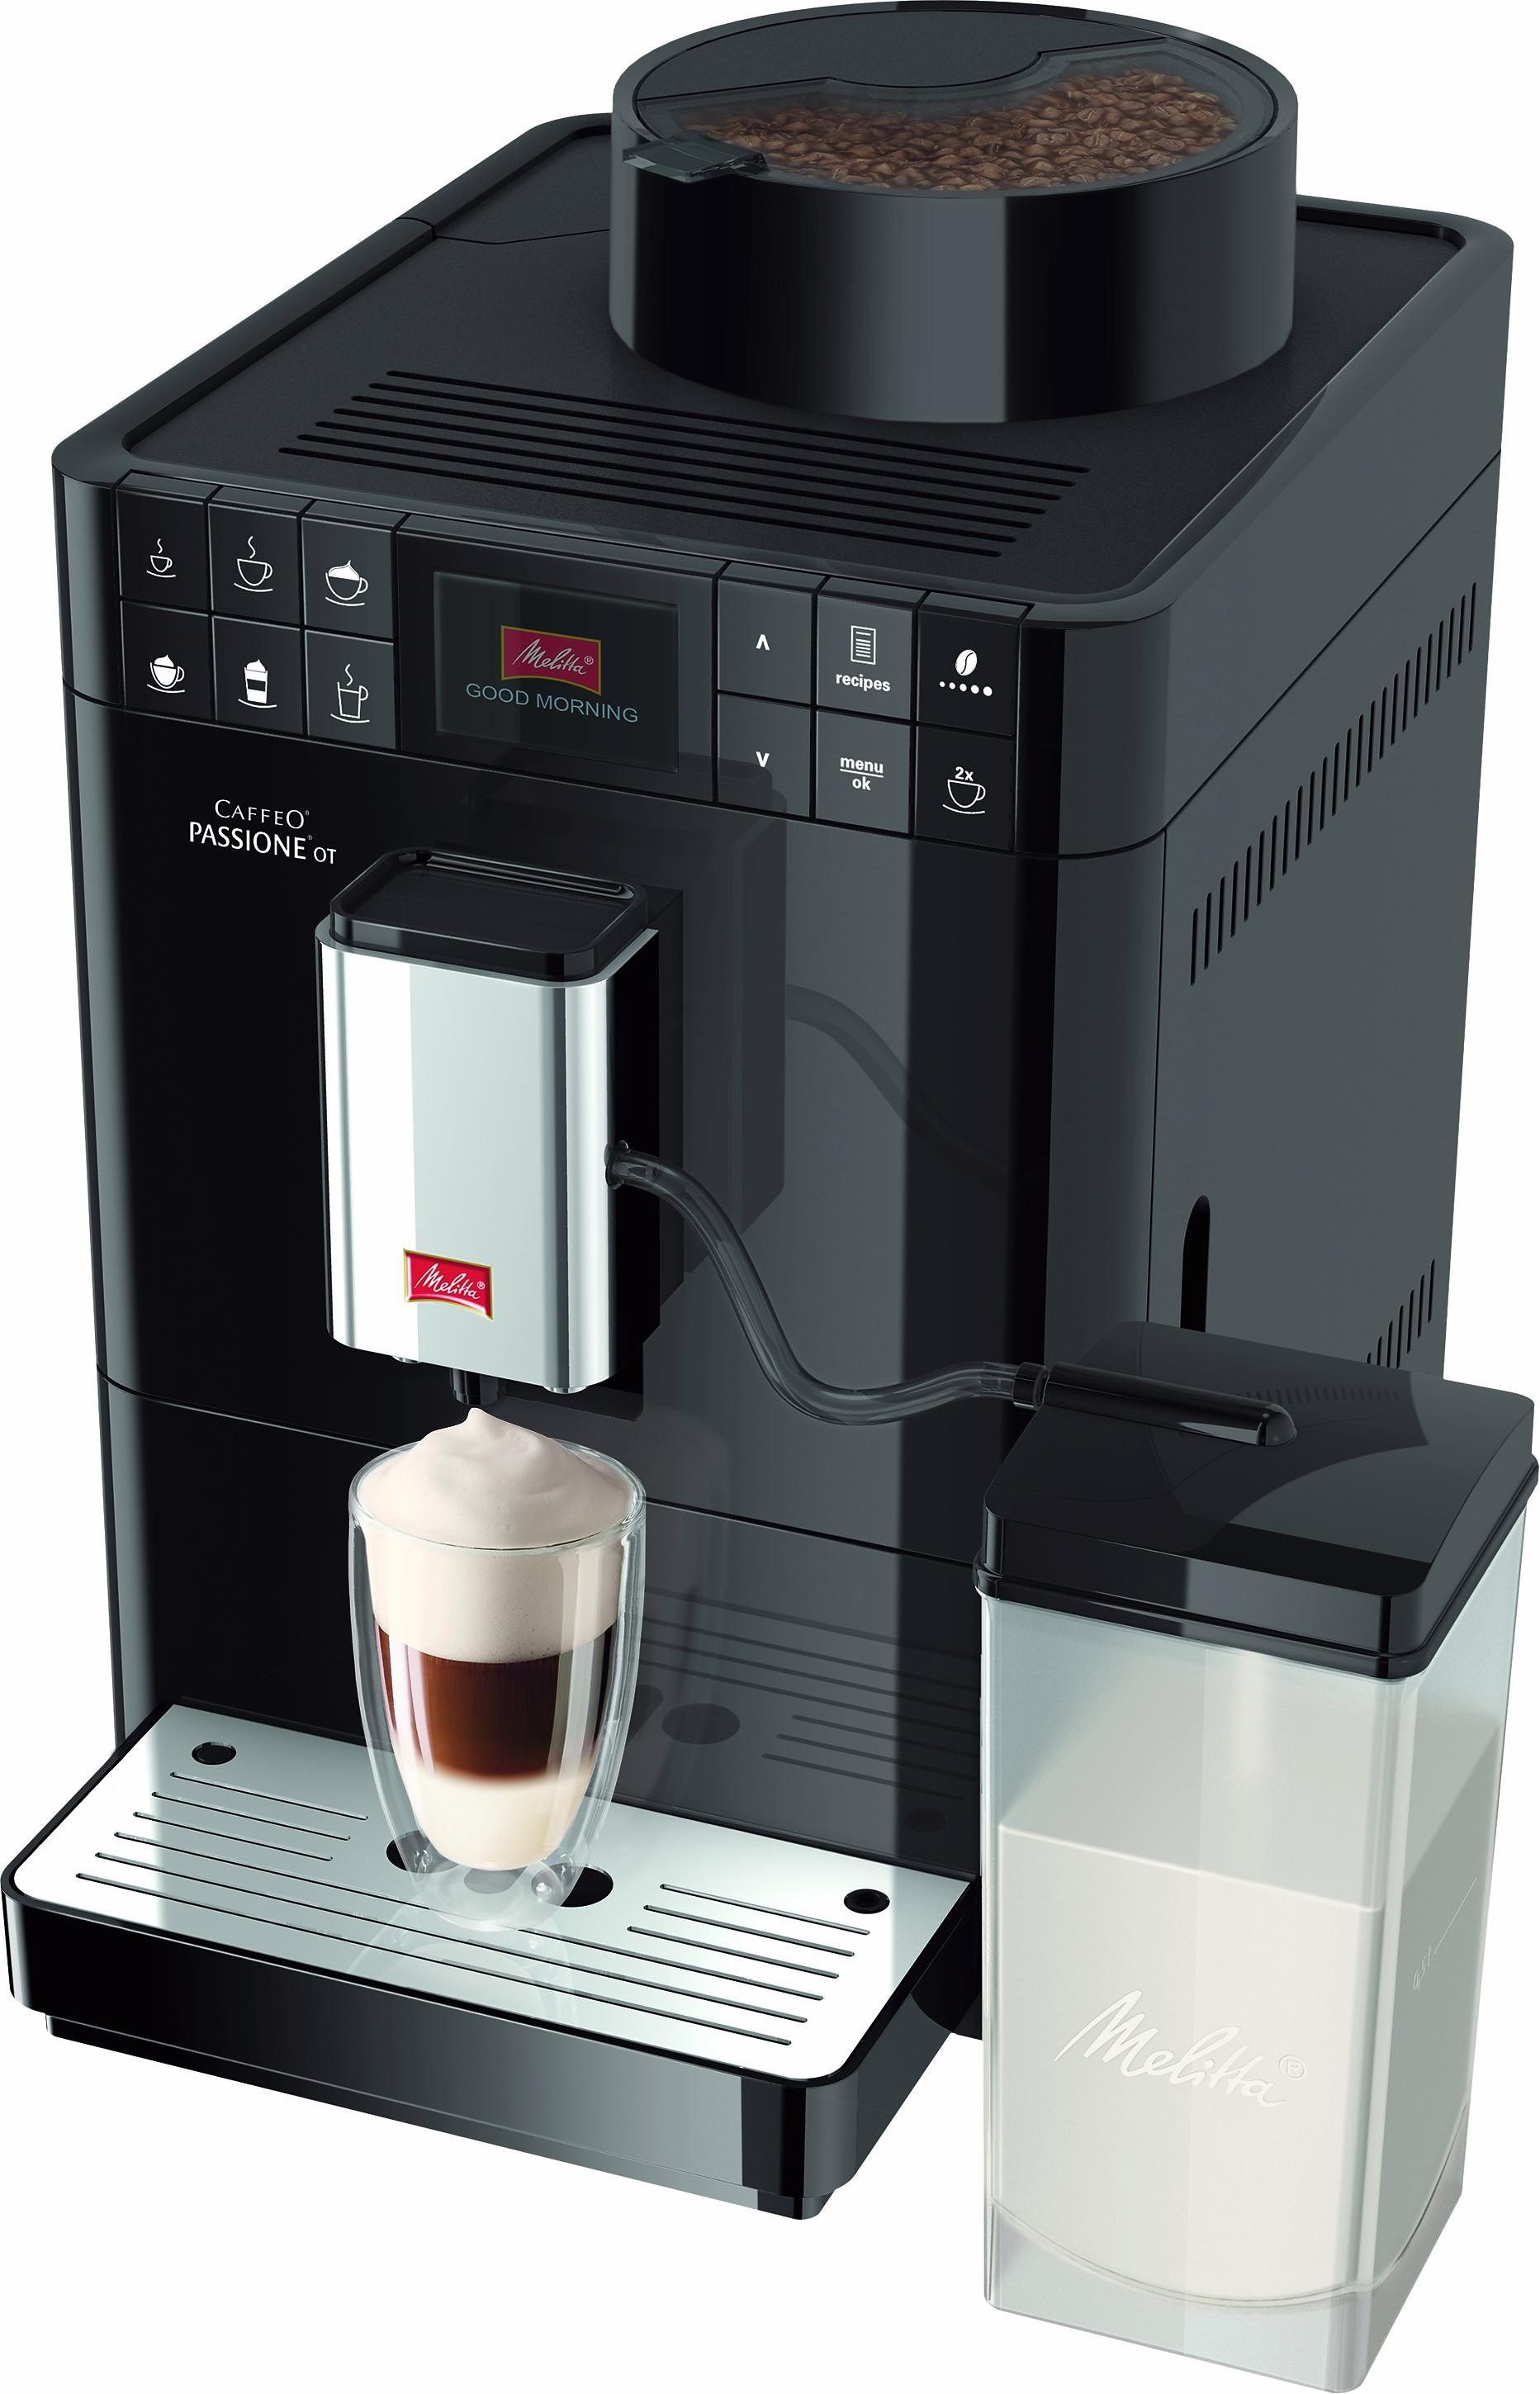 Melitta Kaffeevollautomat Passione® tassengenau One Funktion, Touch Touch F53/1-102, schwarz, gemahlene frisch One